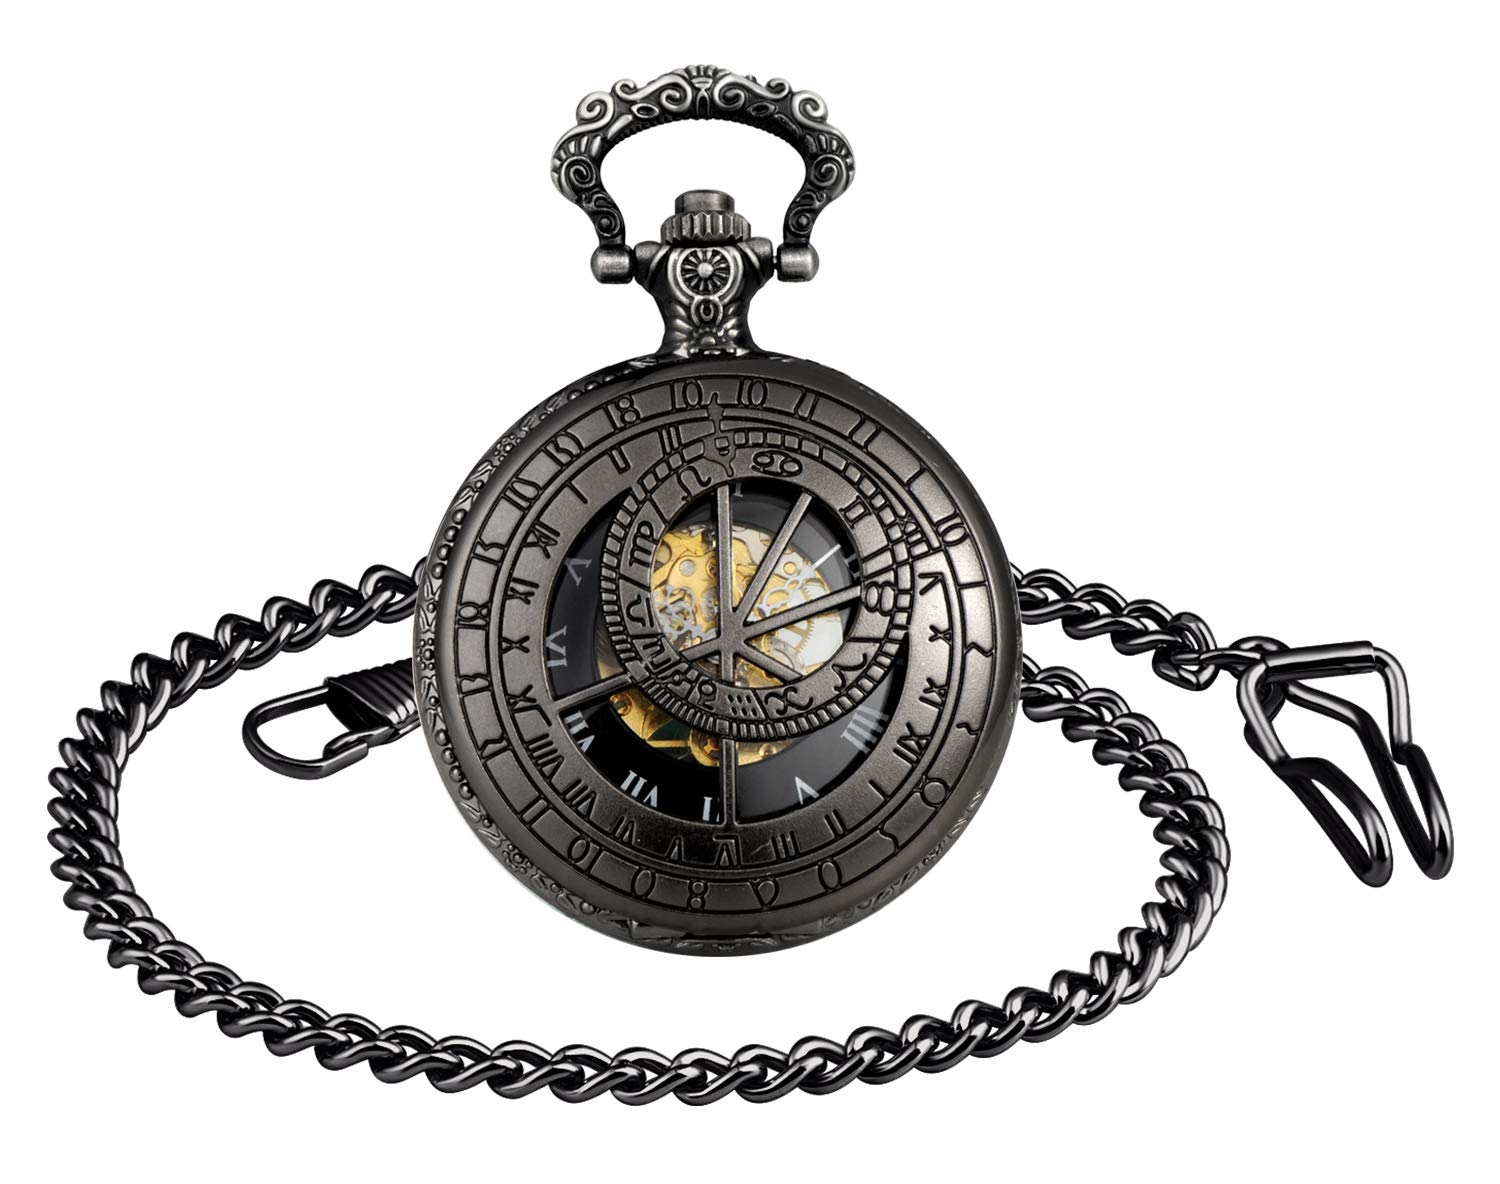 Unendlich U Mechanical Pocket Watch 12 Constellation Compass Vintage Roman Numerals Scale Pocket Watch with Chain